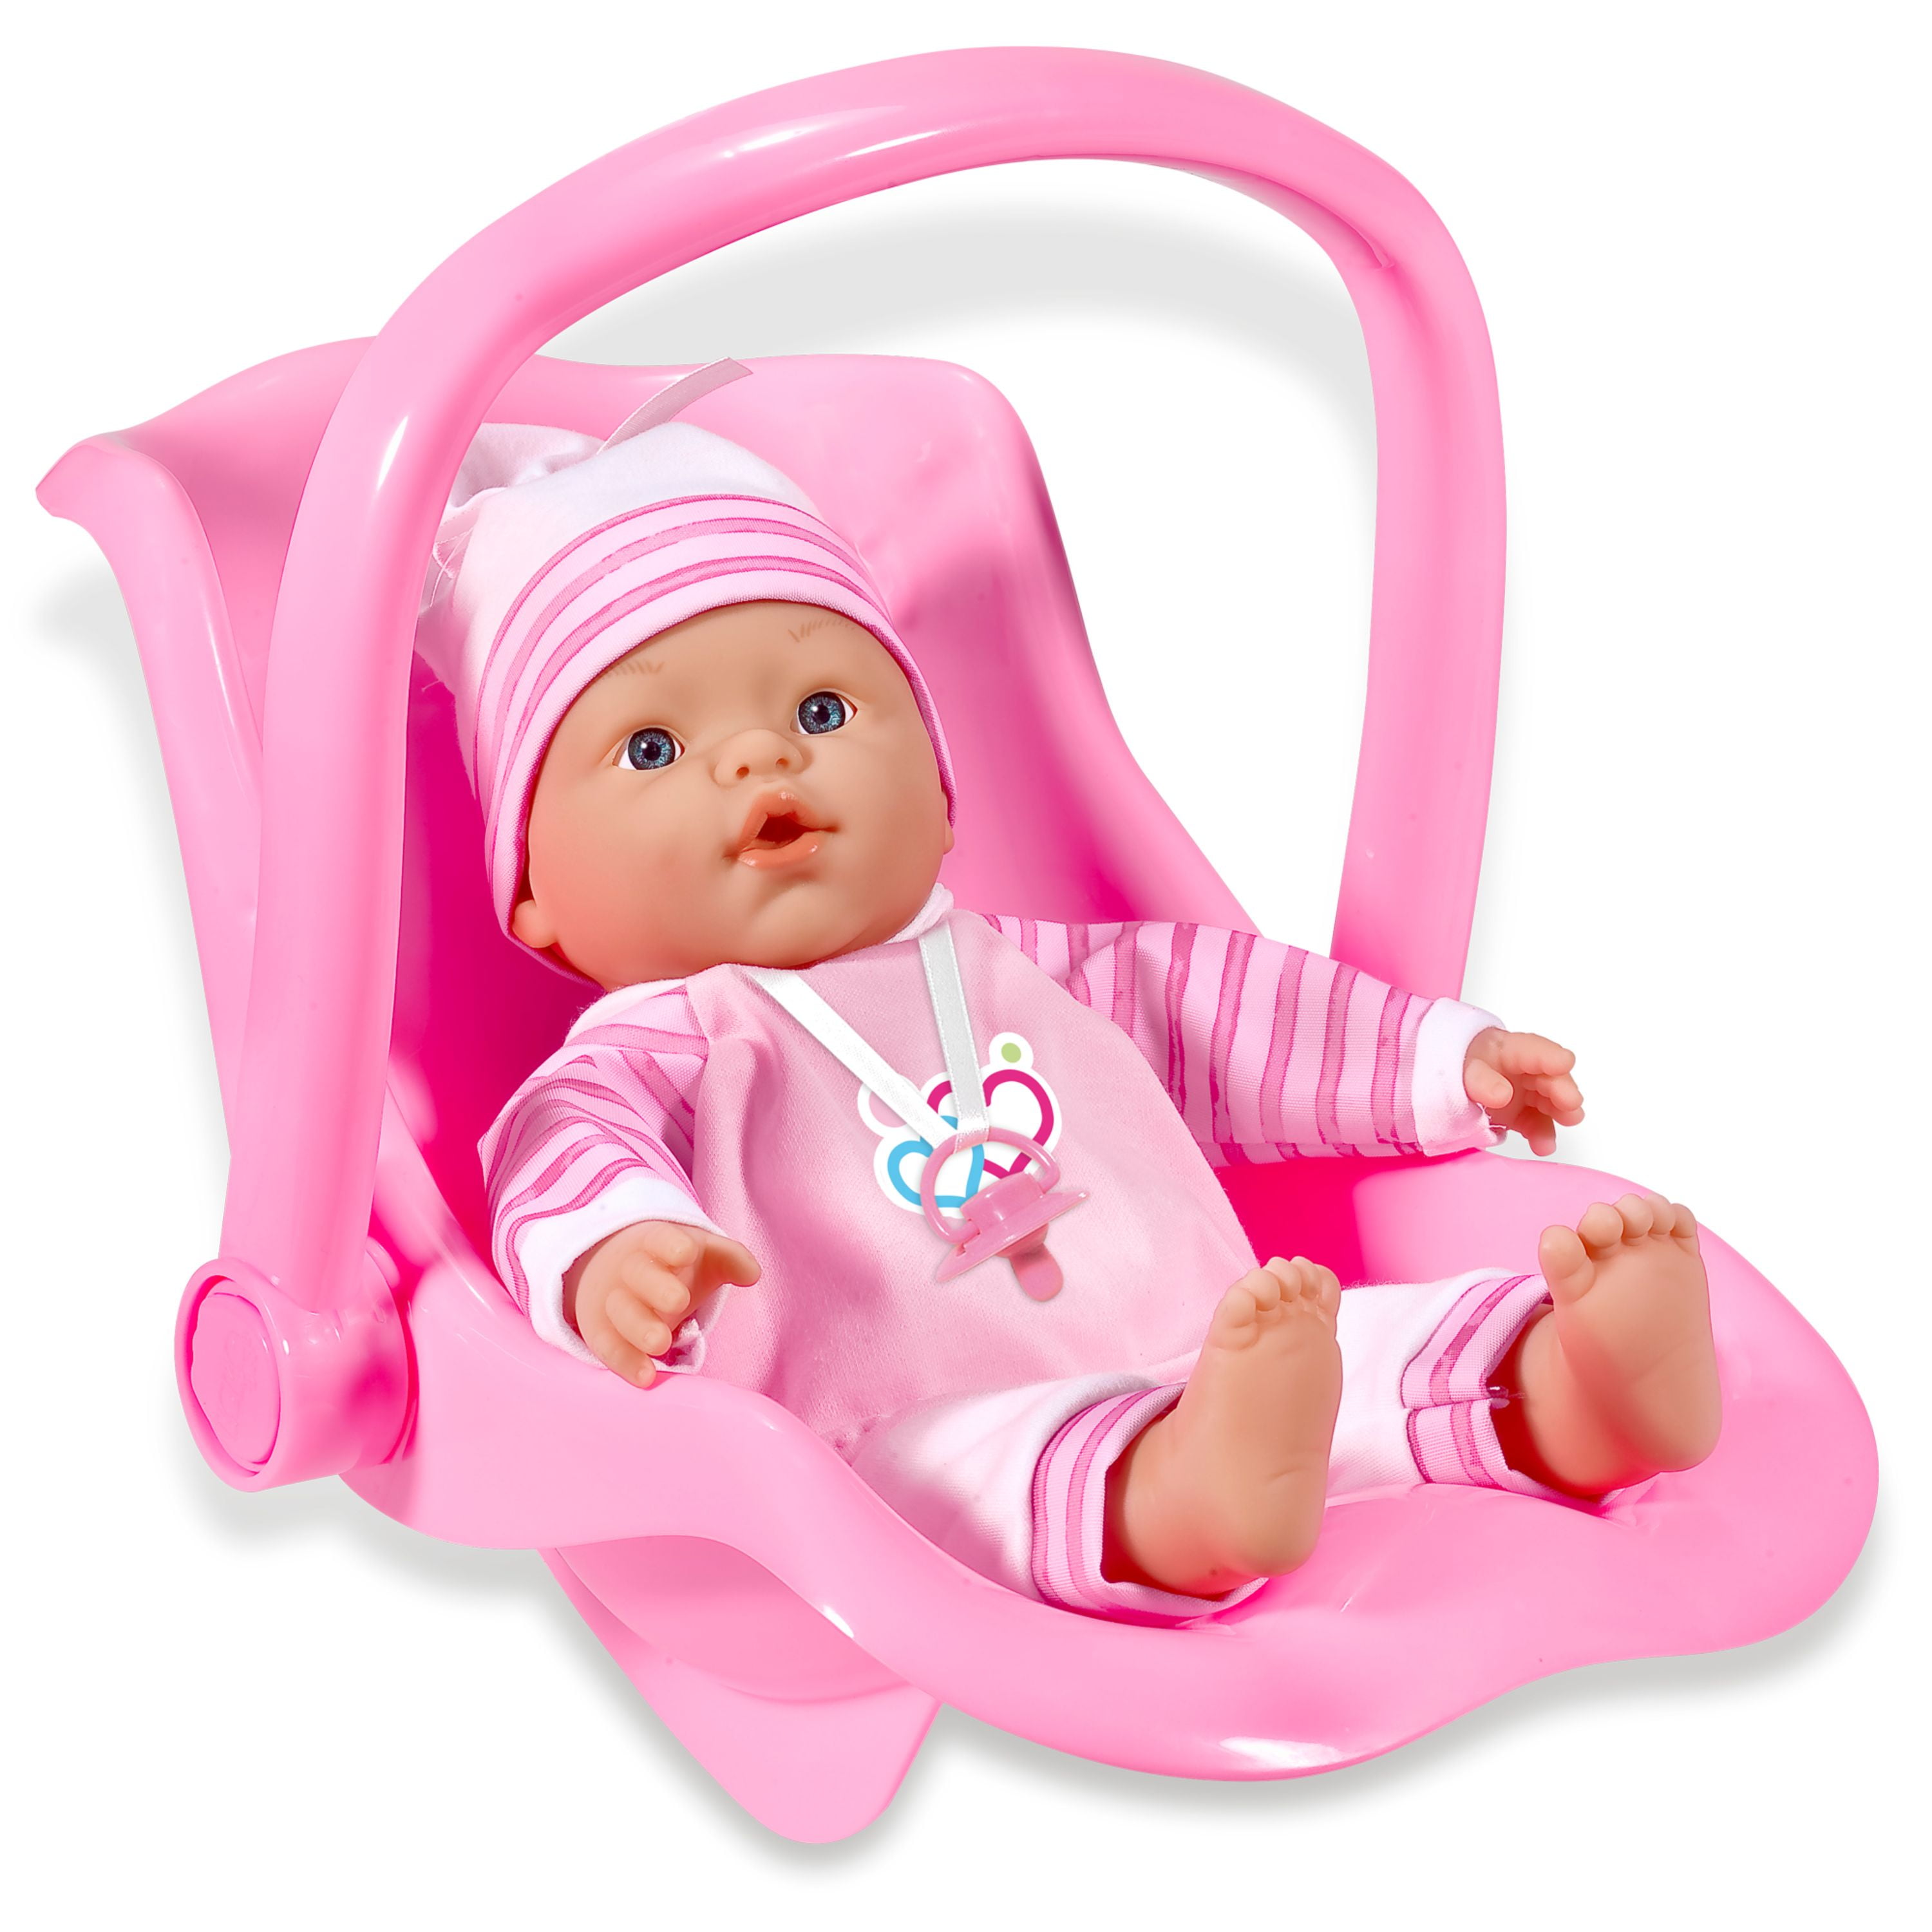 Dolls Bouncy Chair Car Seat toy ocean mermaid pink 